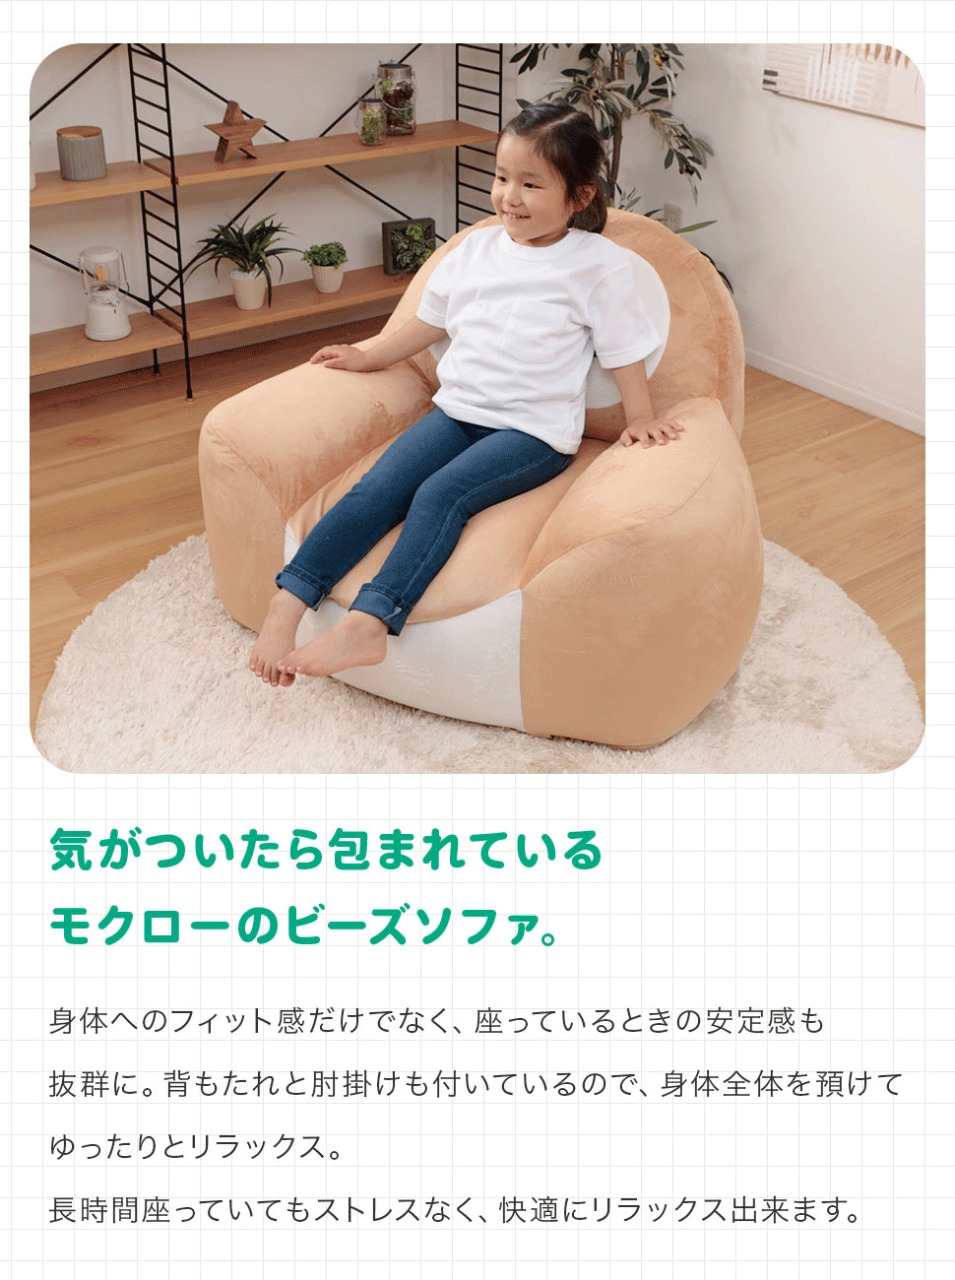 Pokémon: ¡Un sofa inspirado en Rowlet ha sido anunciado en Japón! 7